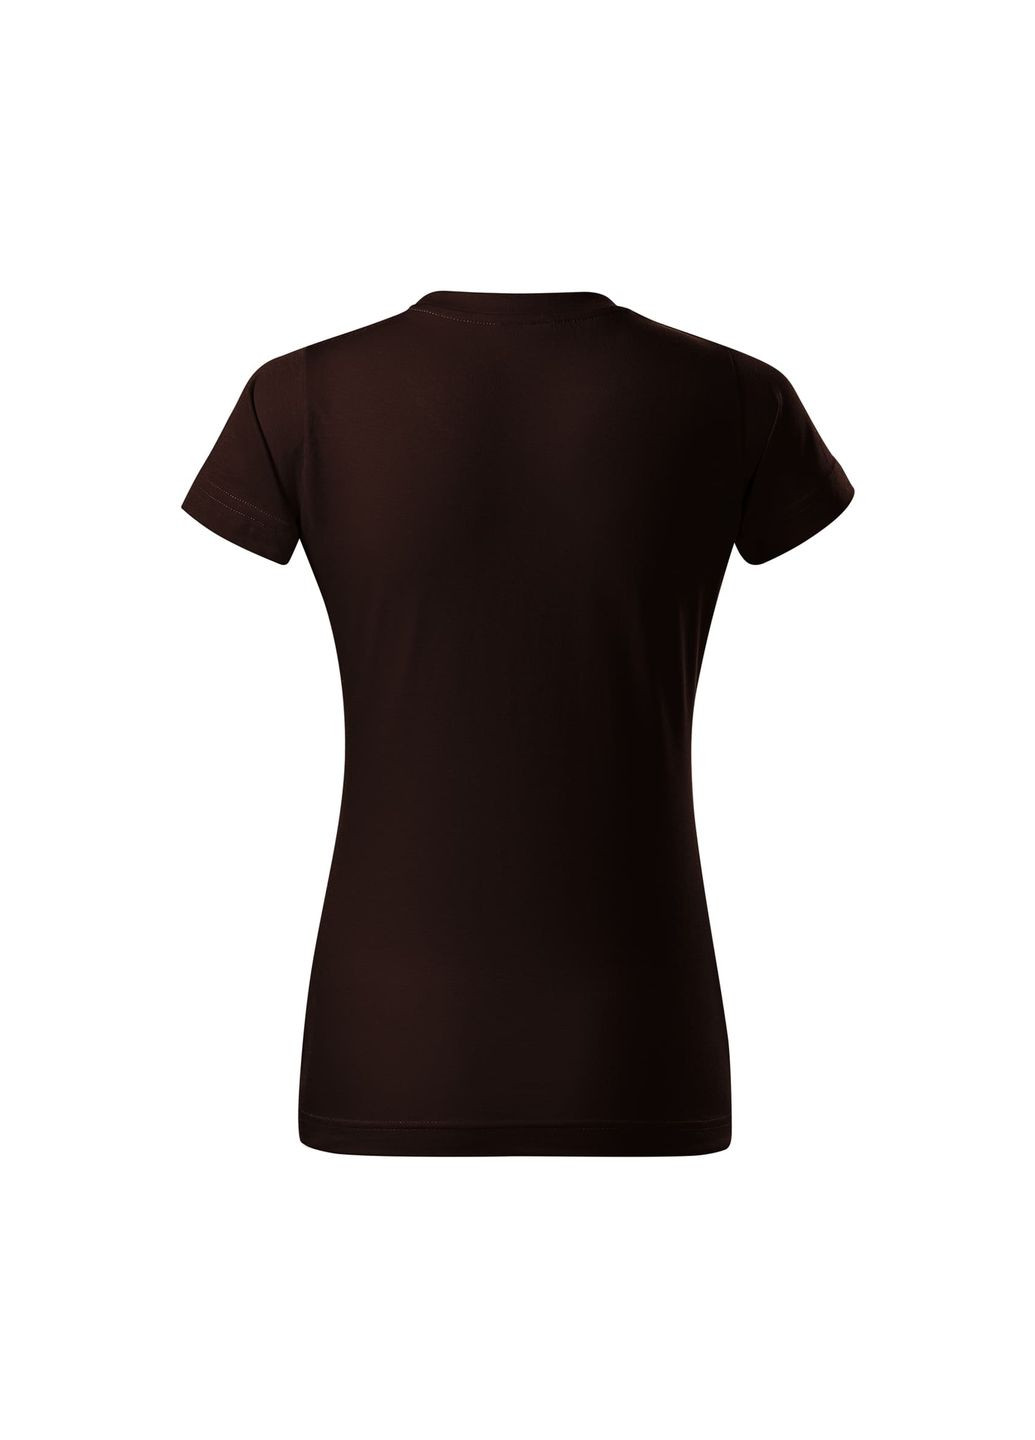 Темно-коричневая всесезон футболка женская хлопковая однотонная темно-коричнева 134-27 с коротким рукавом Malfini Basic